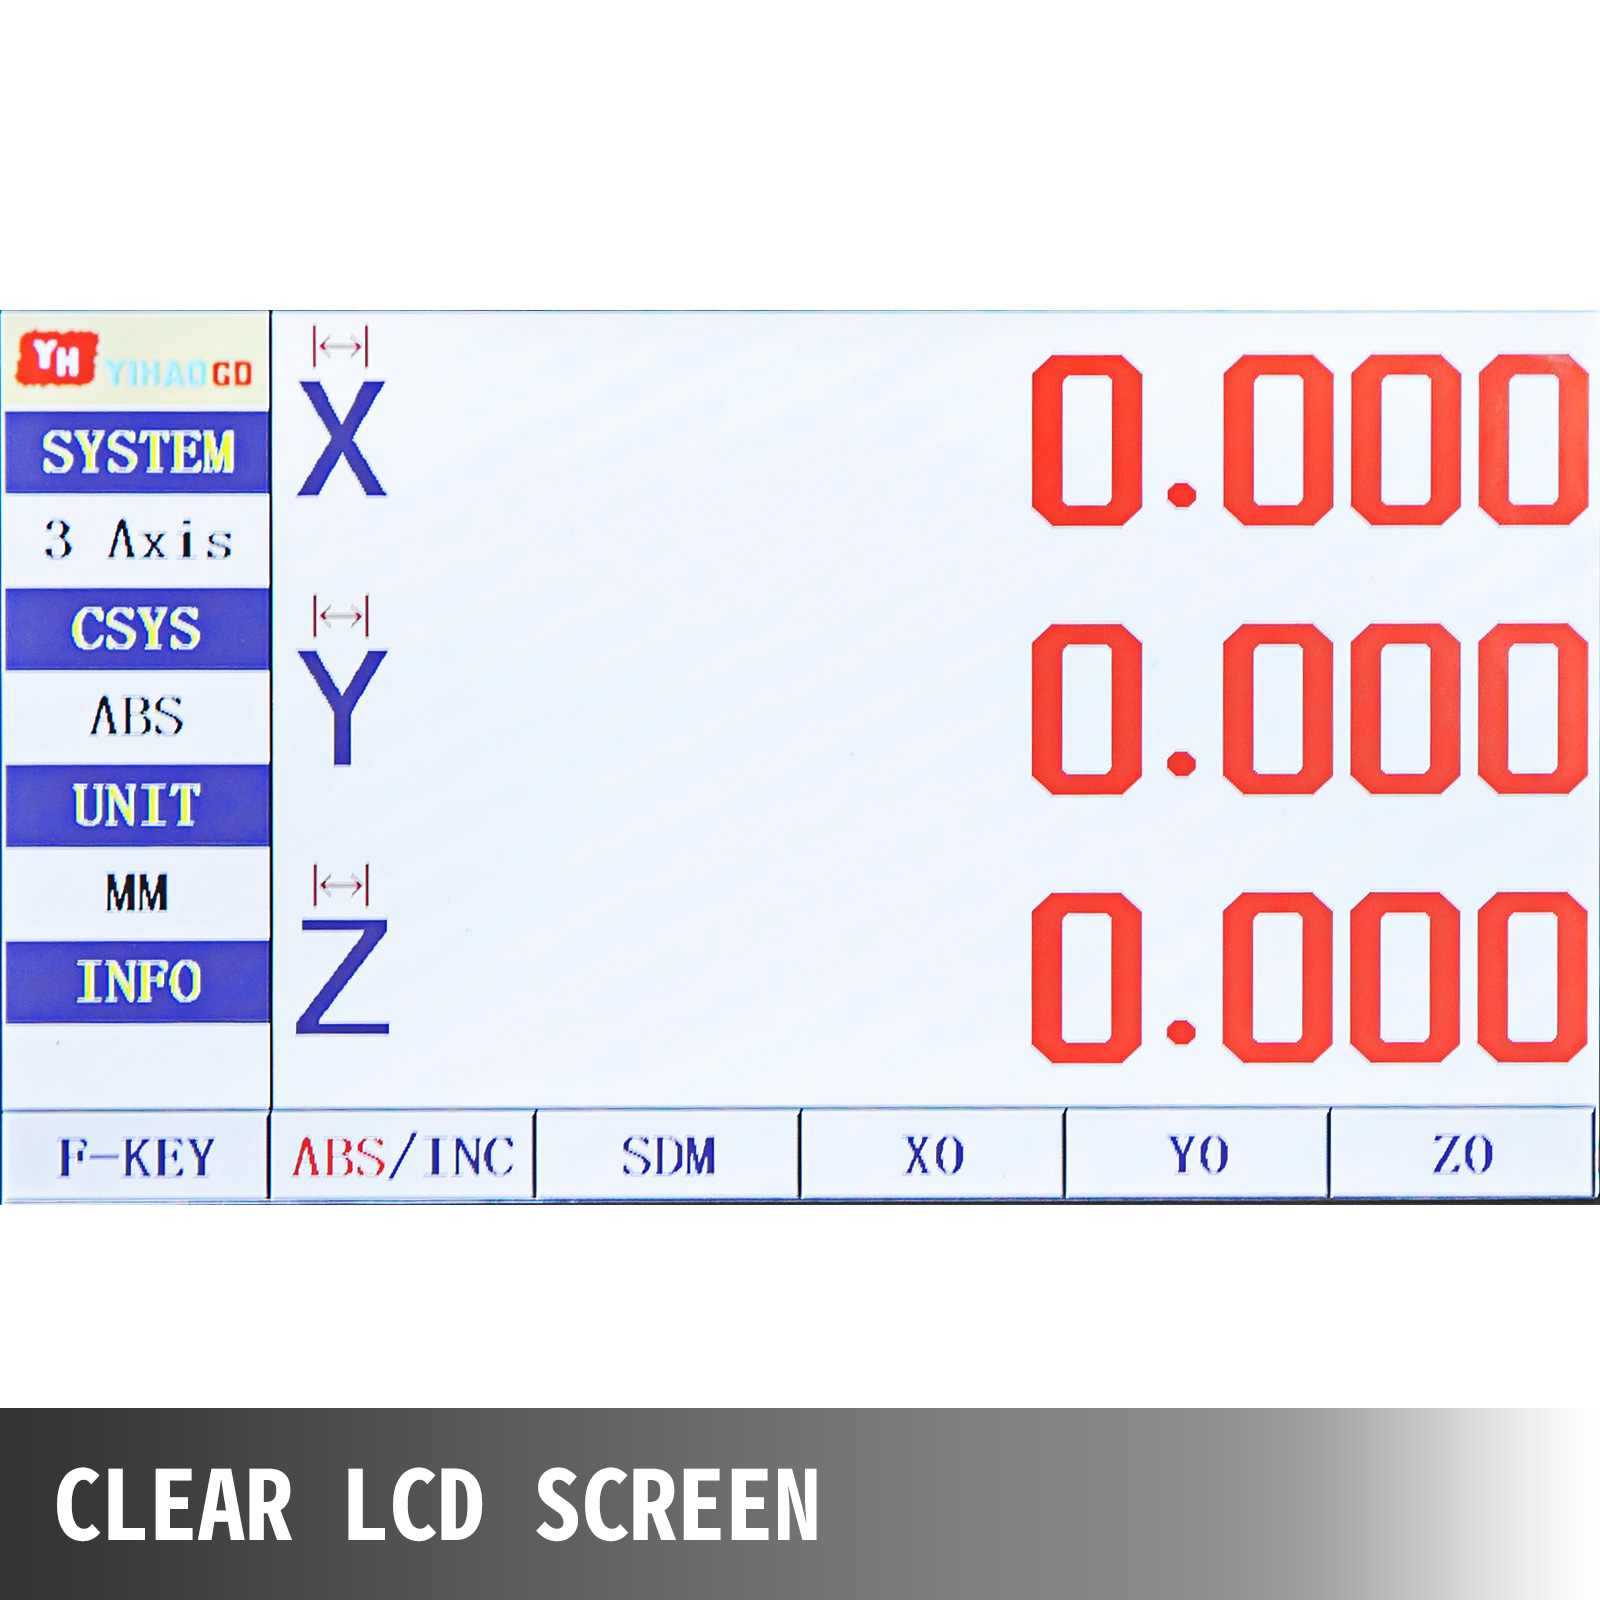 lectura LCD digital de escala lineal de 0-500 mm para tornos de fresadoras Escala lineal digital precisa